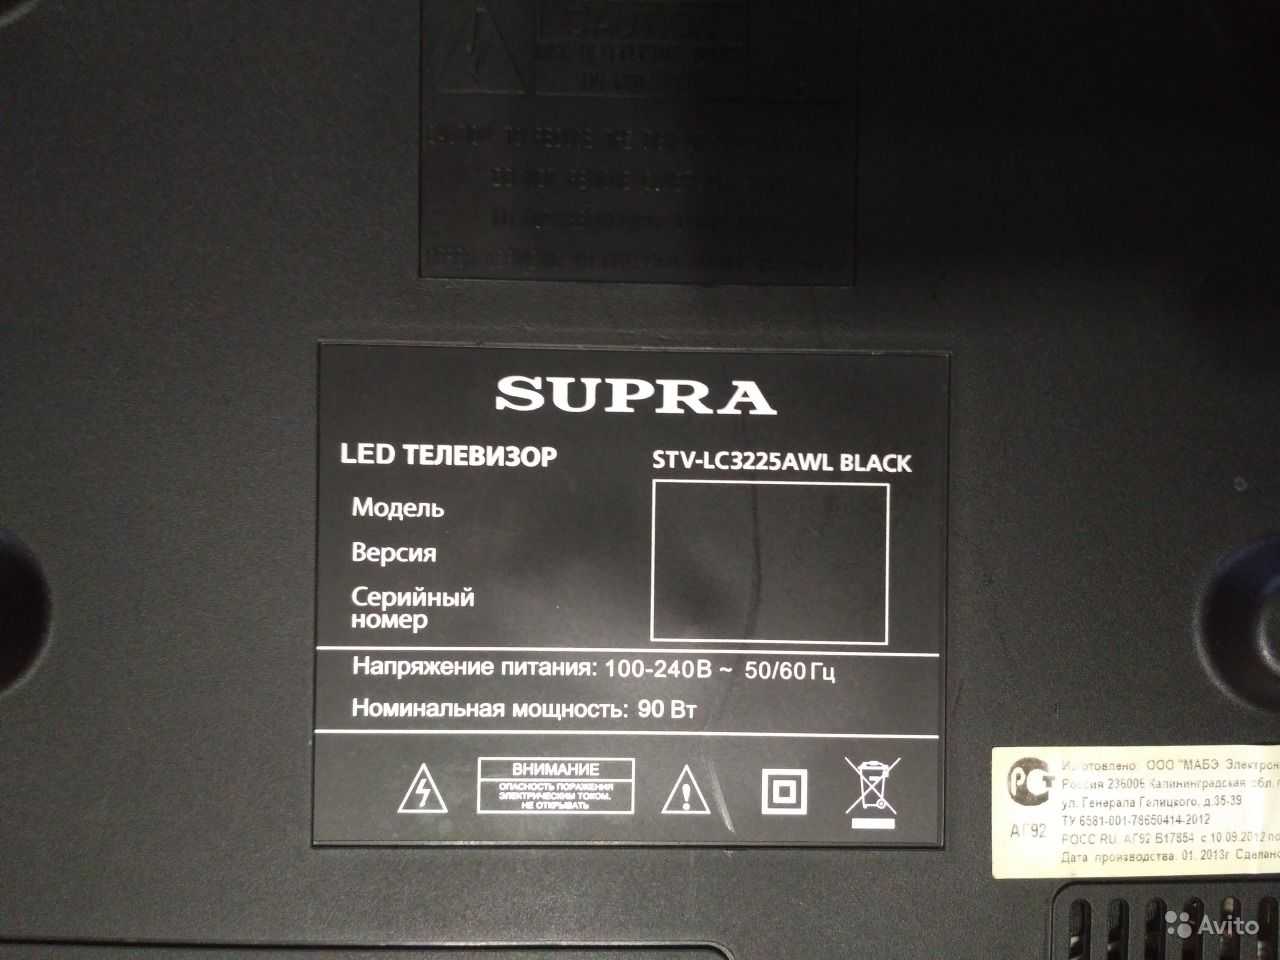 Жк-телевизор supra stv-lc3225awl белый в москве. купить жк-телевизор supra stv-lc3225awl белый. цены на жк-телевизор supra stv-lc3225awl белый. где купить жк-телевизор supra stv-lc3225awl белый?